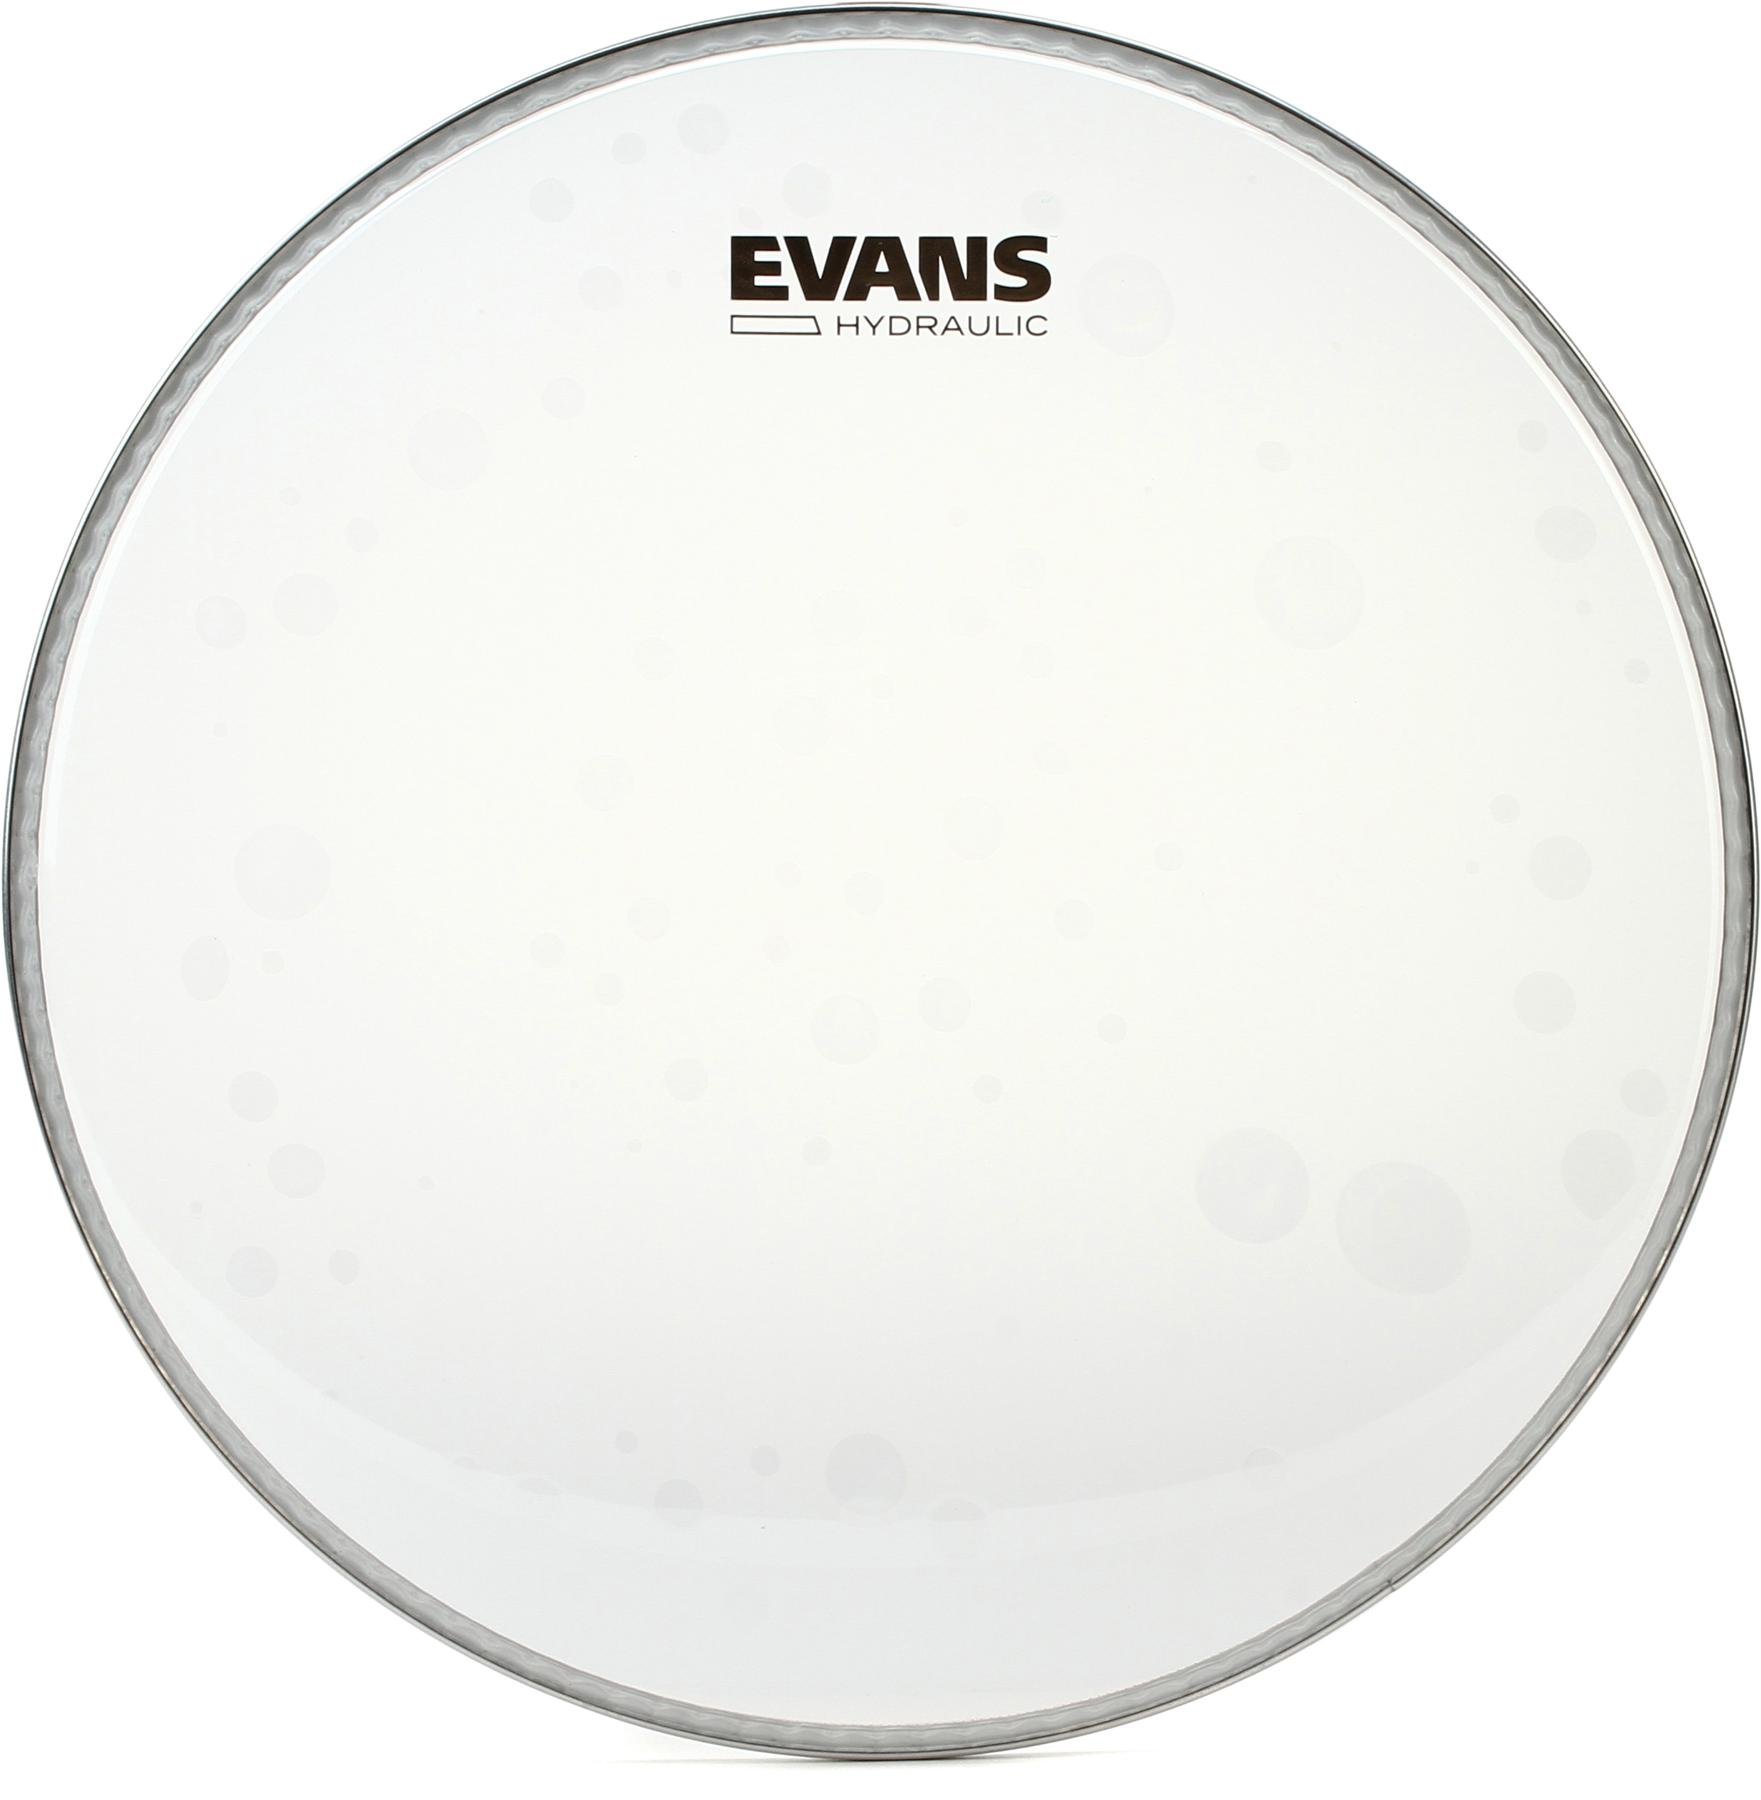 evans hydraulic glass drum heads